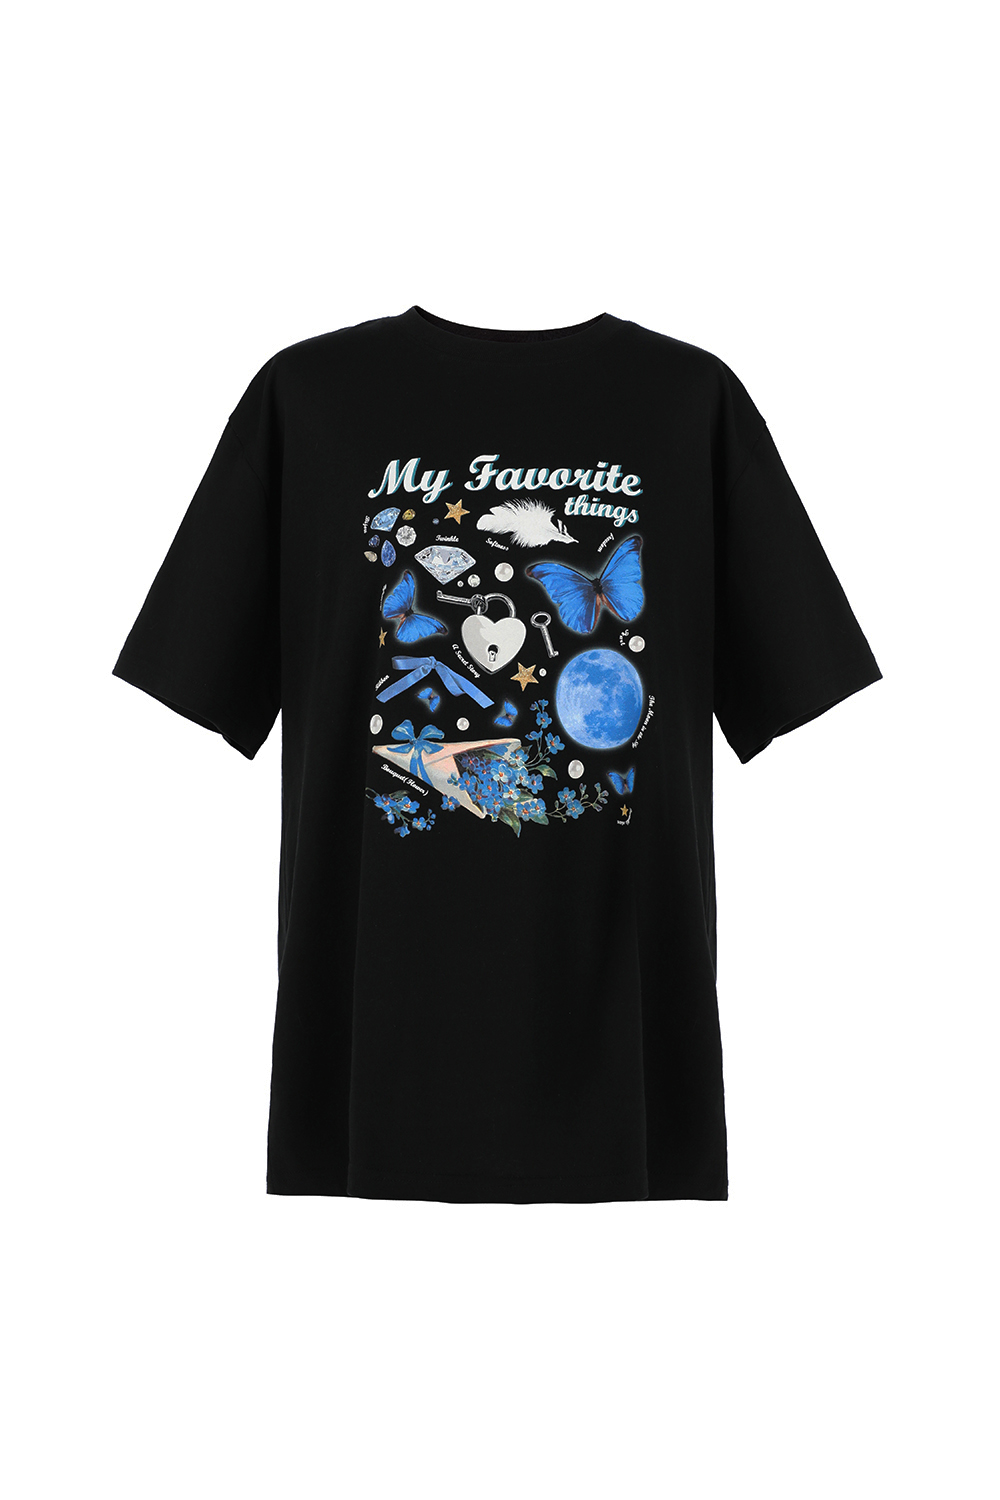 [REFURB] My Favorite Things T-shirt - BLACK